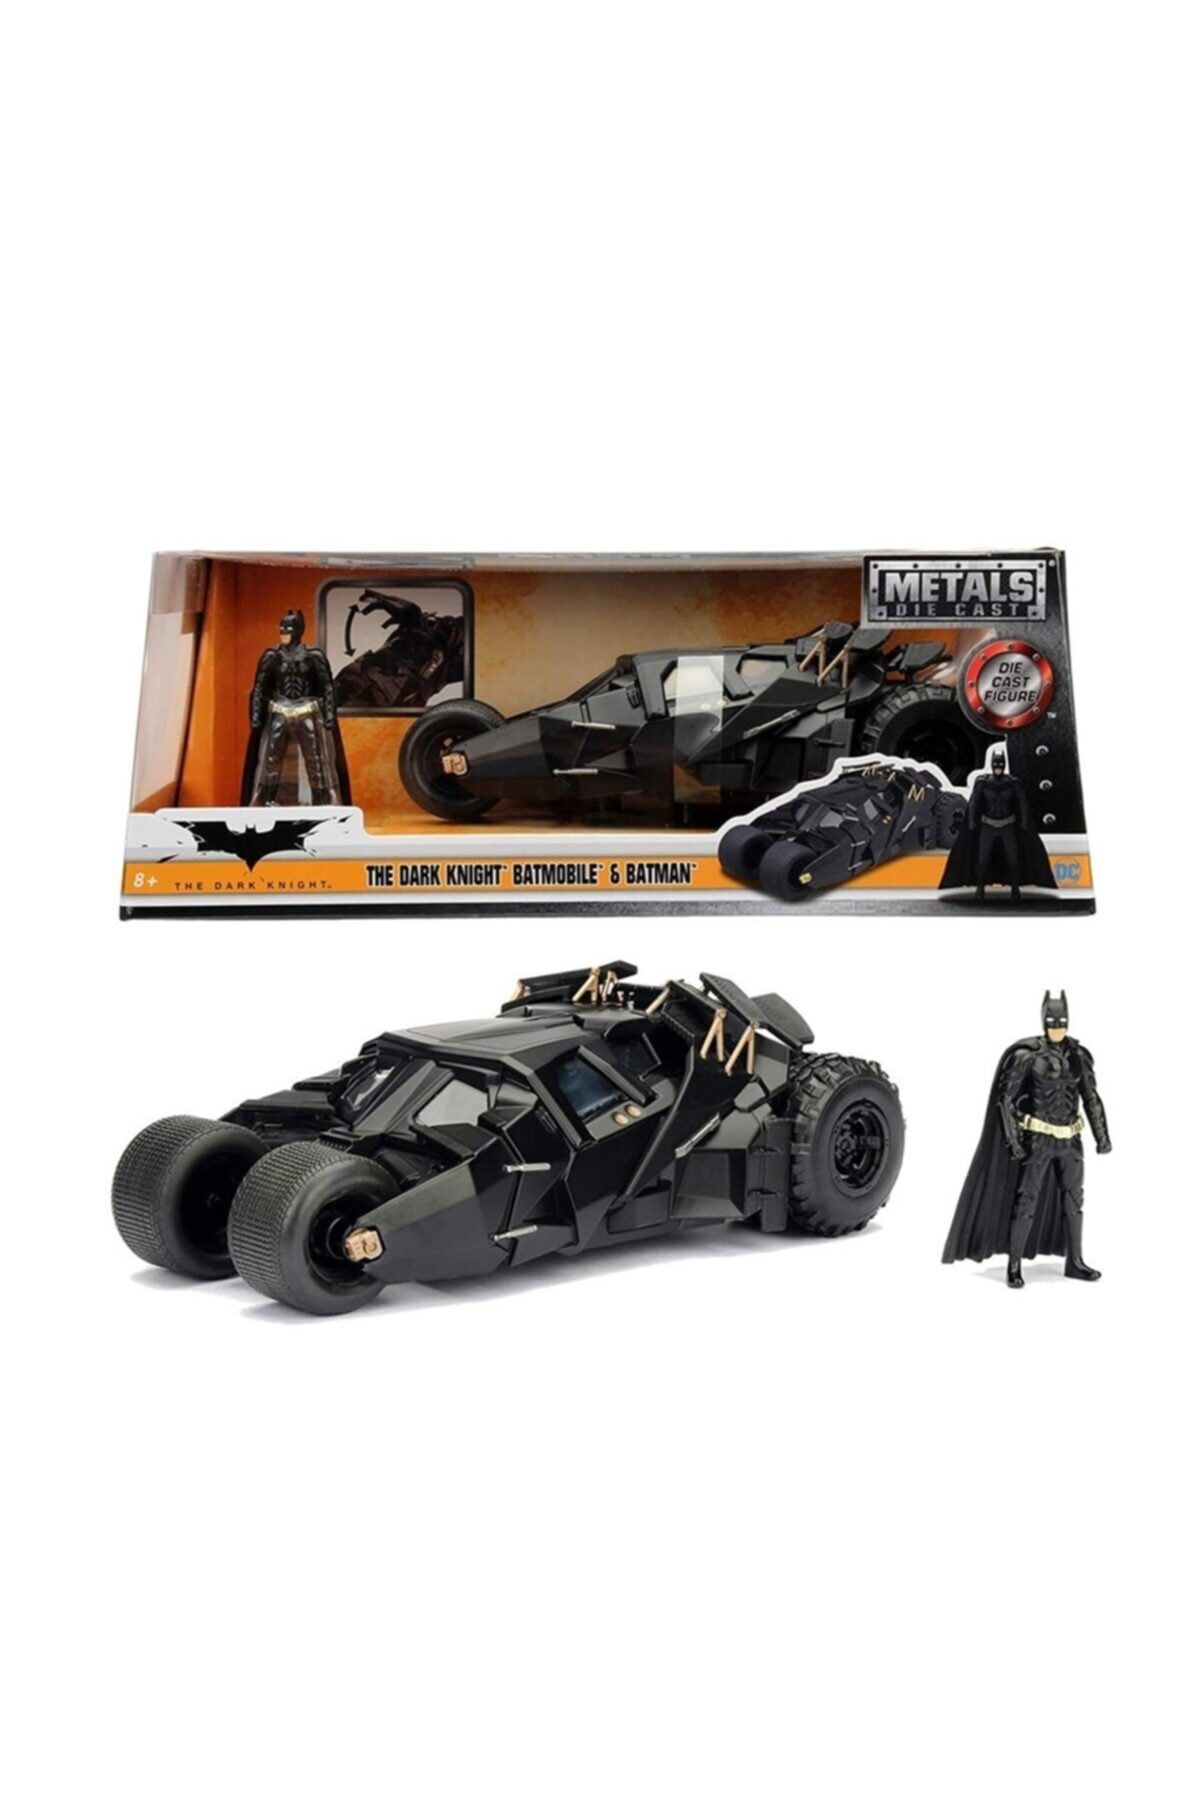 Batman Jada 1:24 The Dark Knight Batmobile